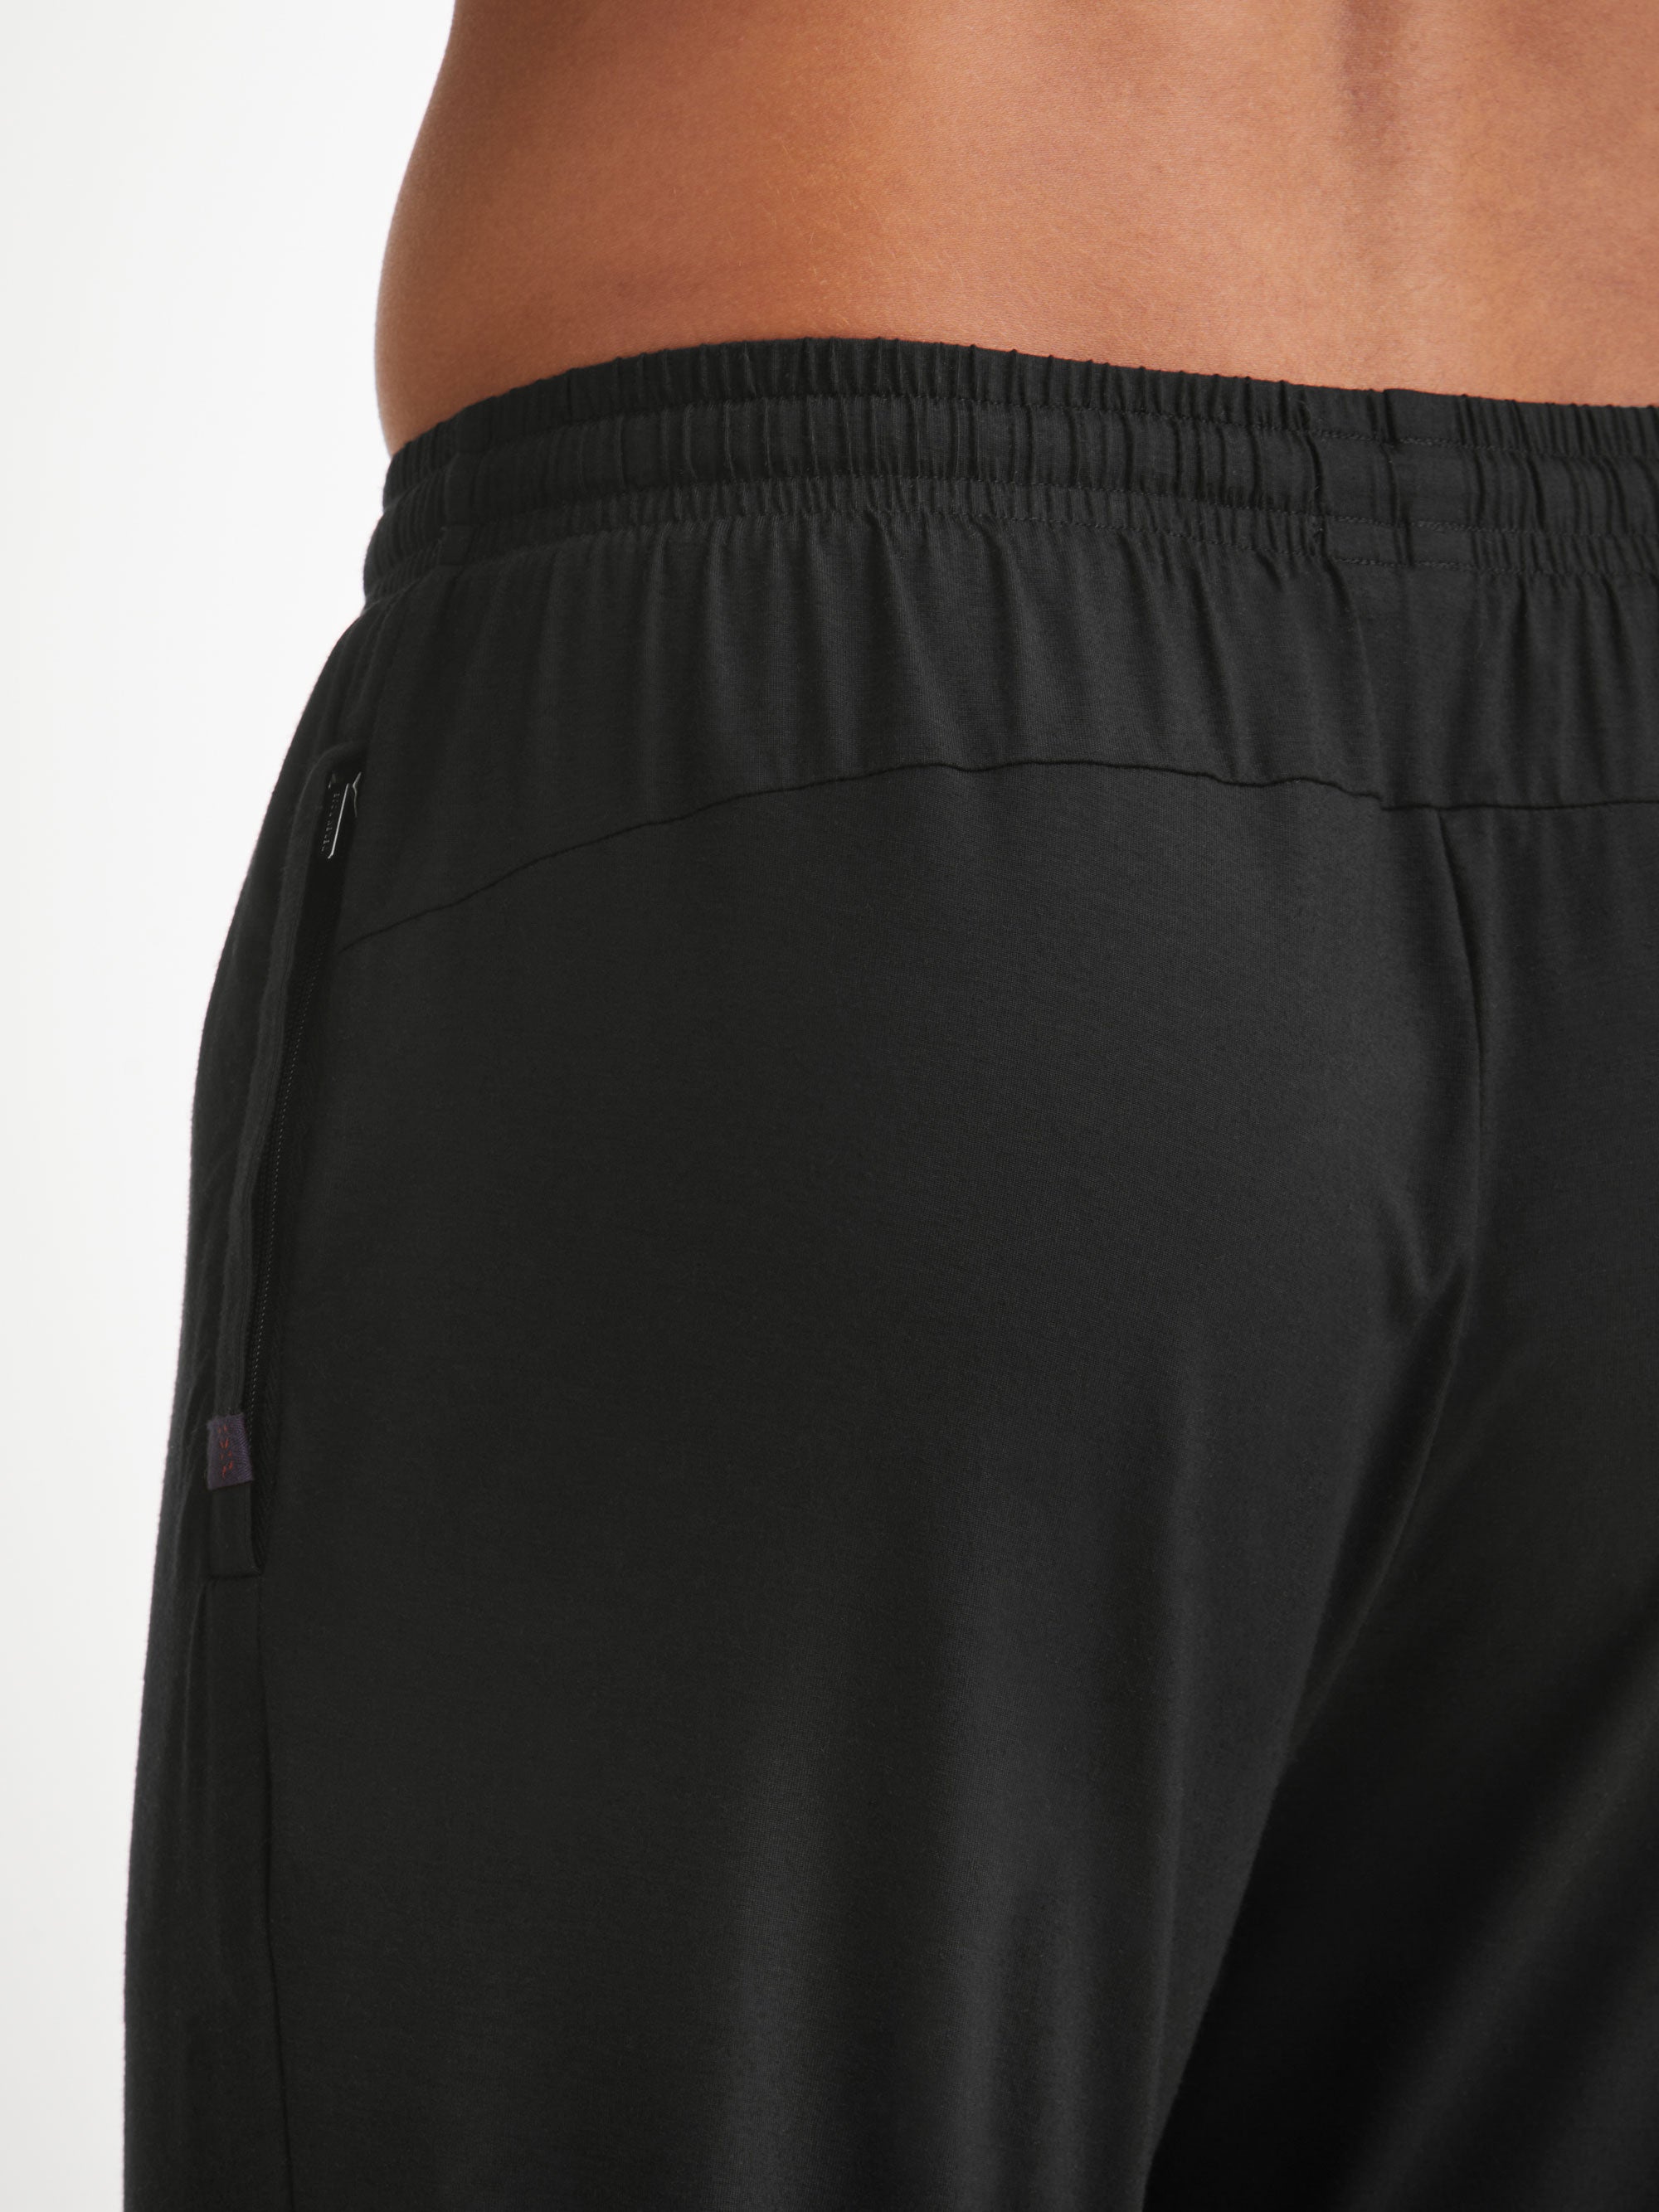 Men's Track Pants Basel Micro Modal Stretch Black